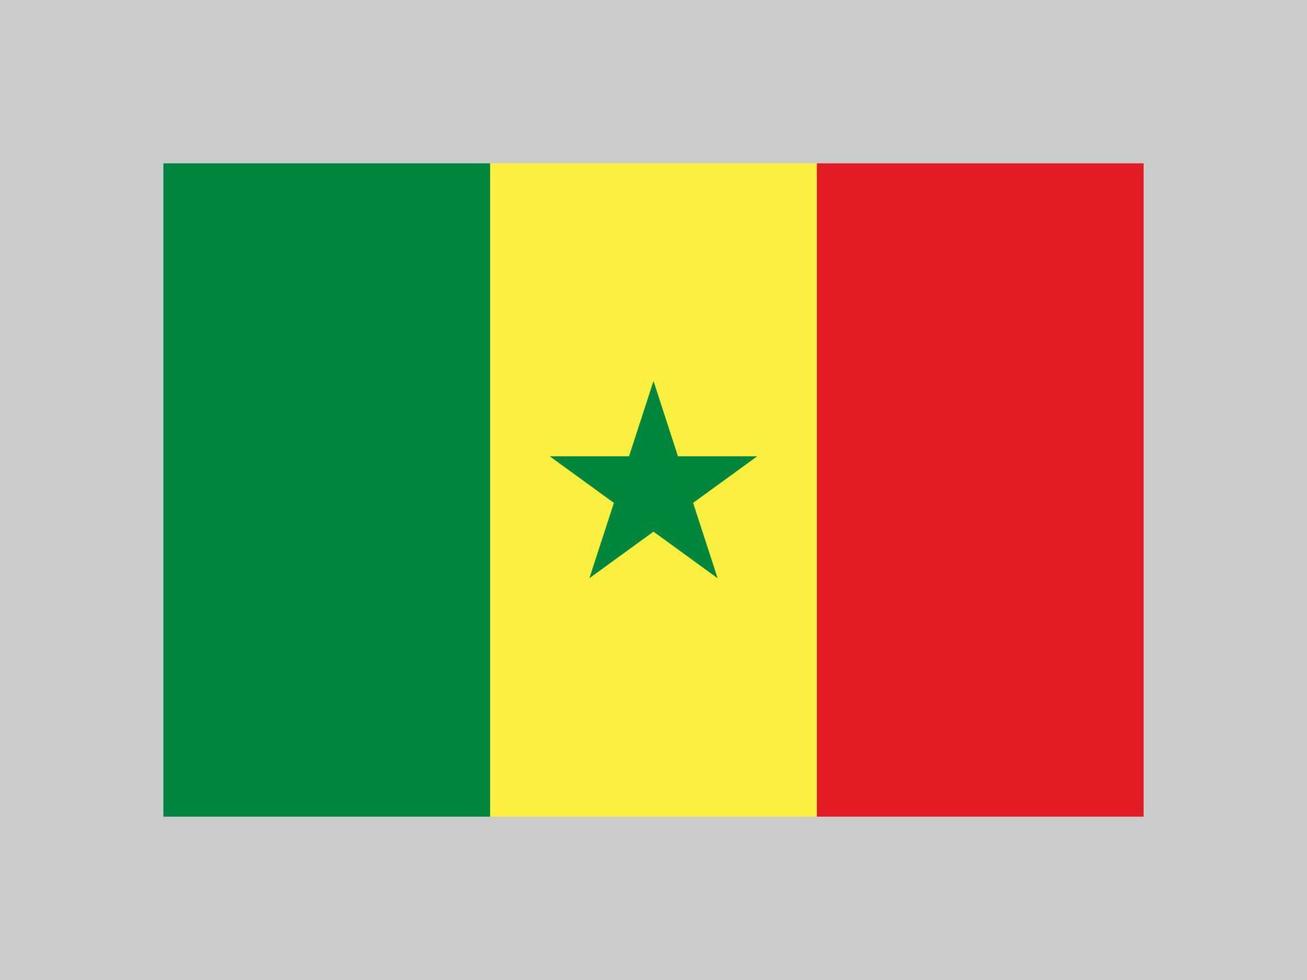 senegals flagga, officiella färger och proportioner. vektor illustration.